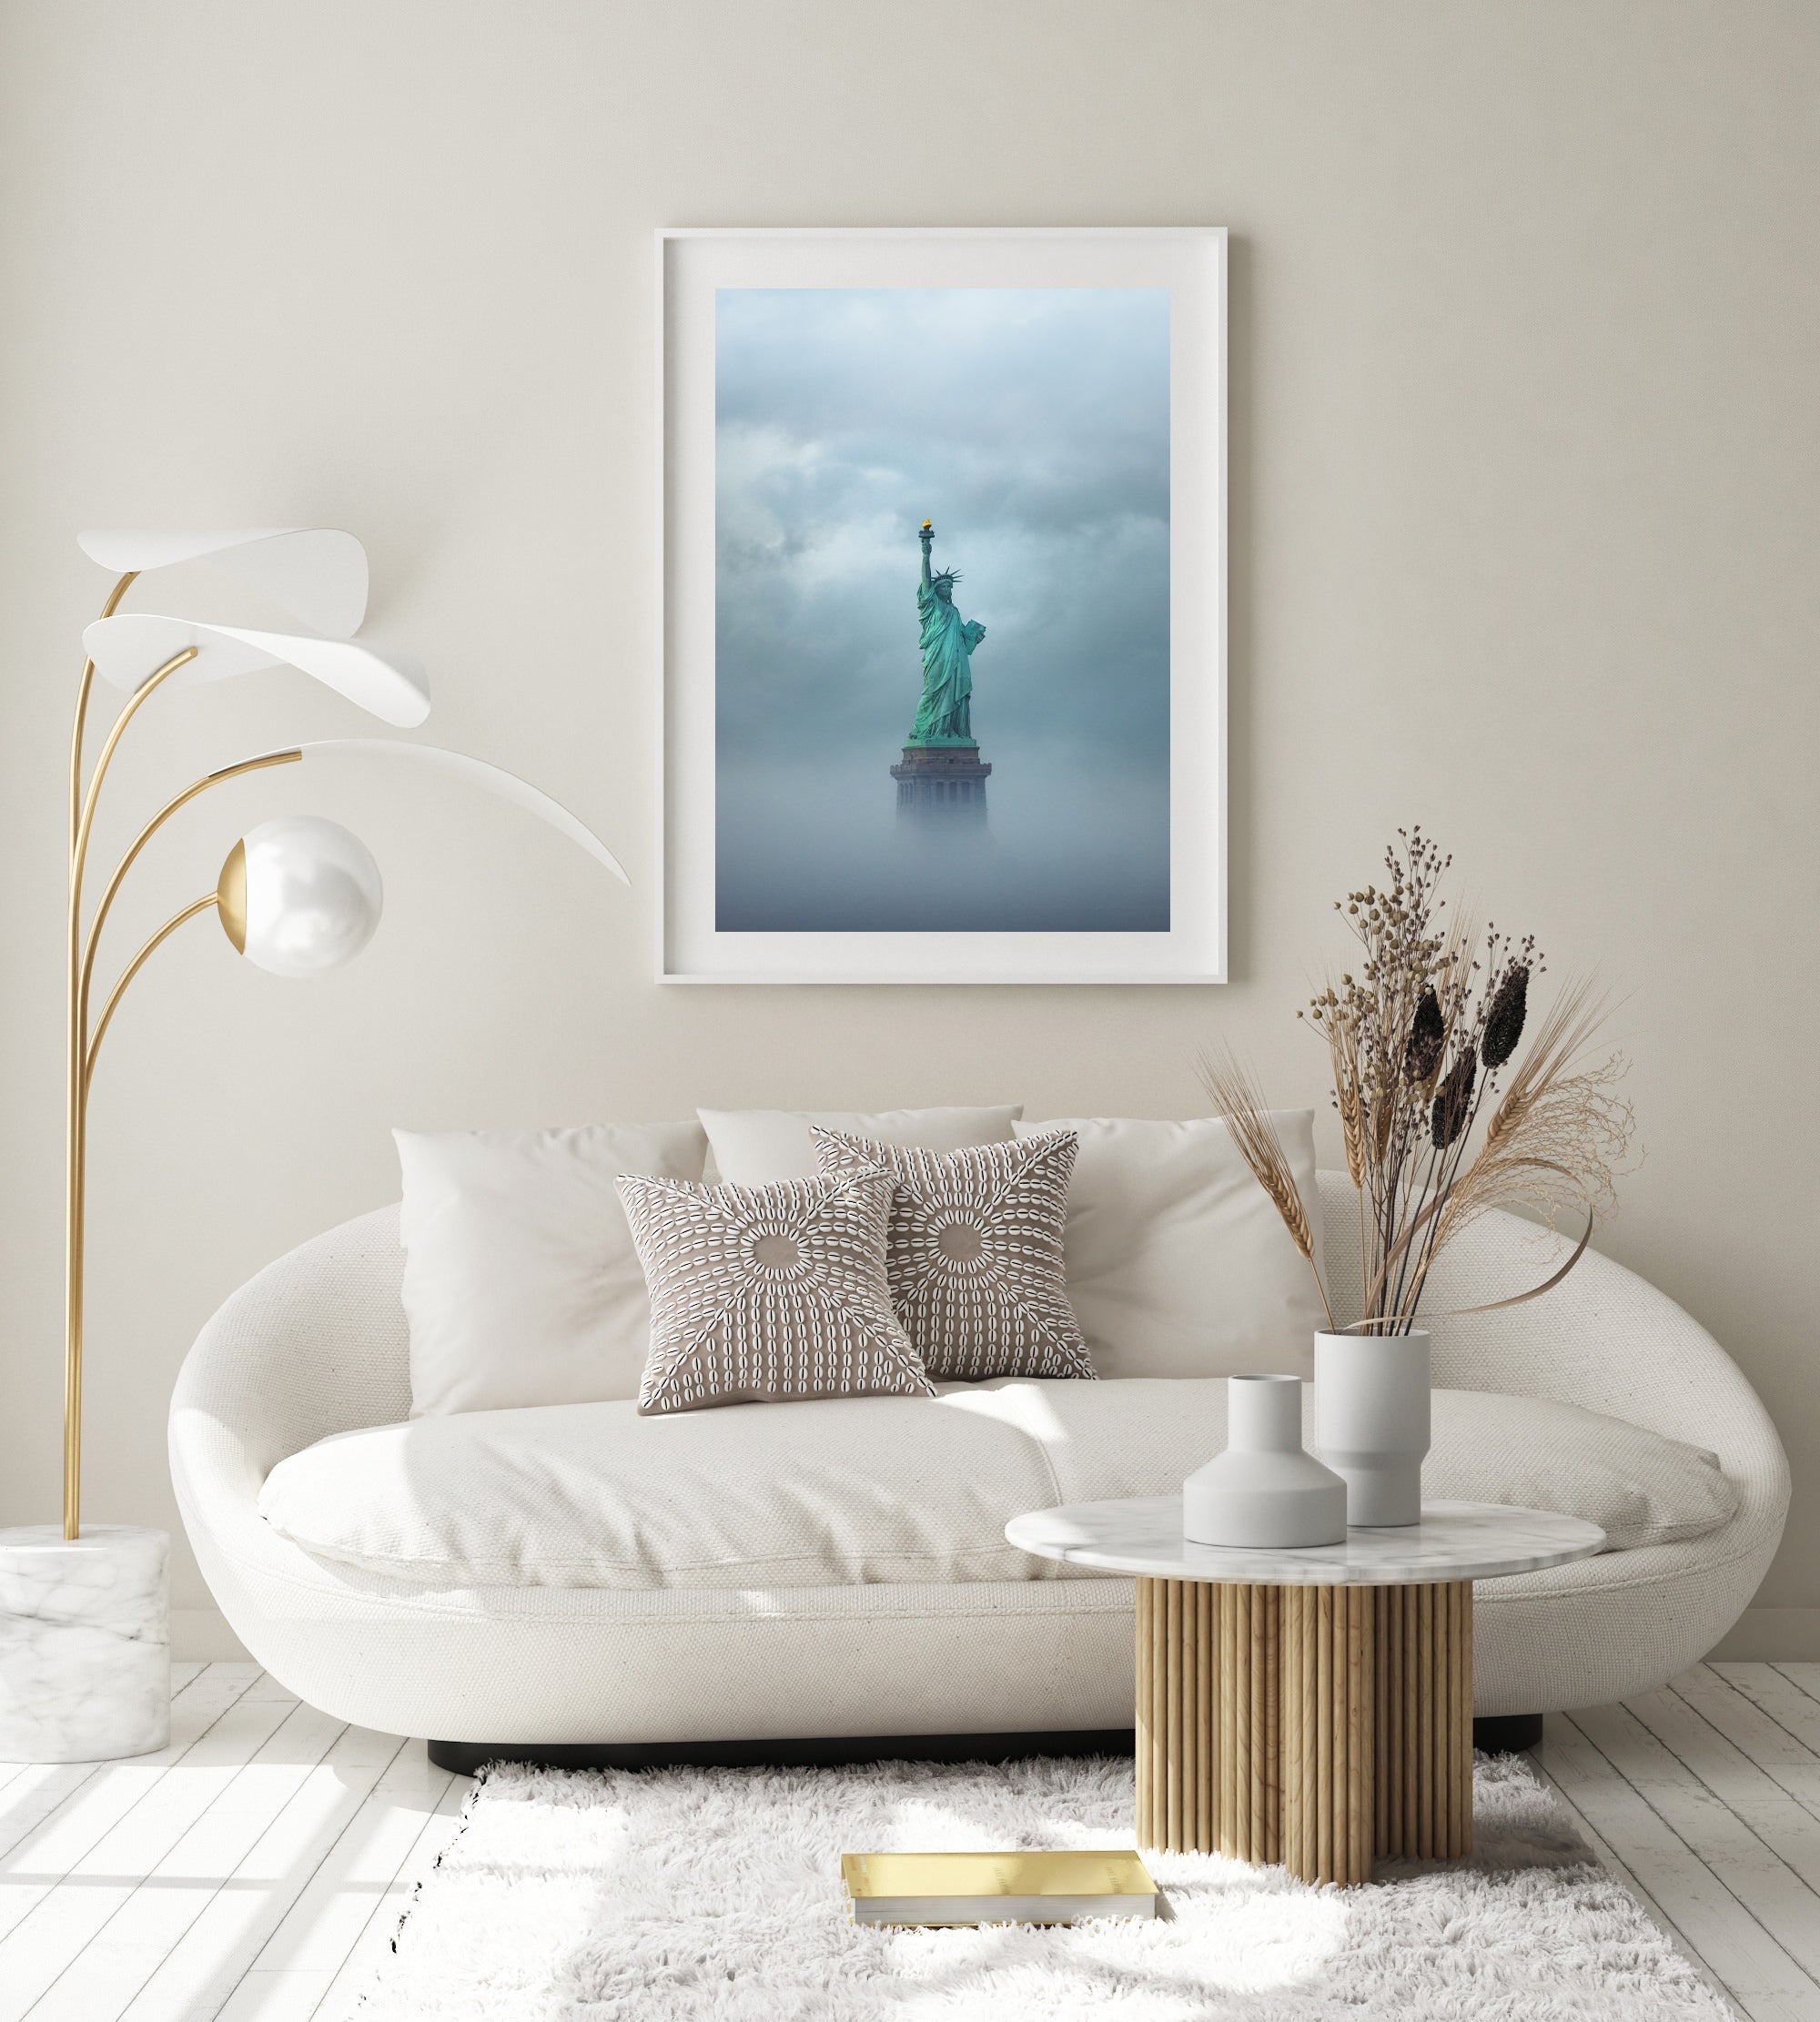 Statue of Liberty In The Fog II - Peter Yan Studio